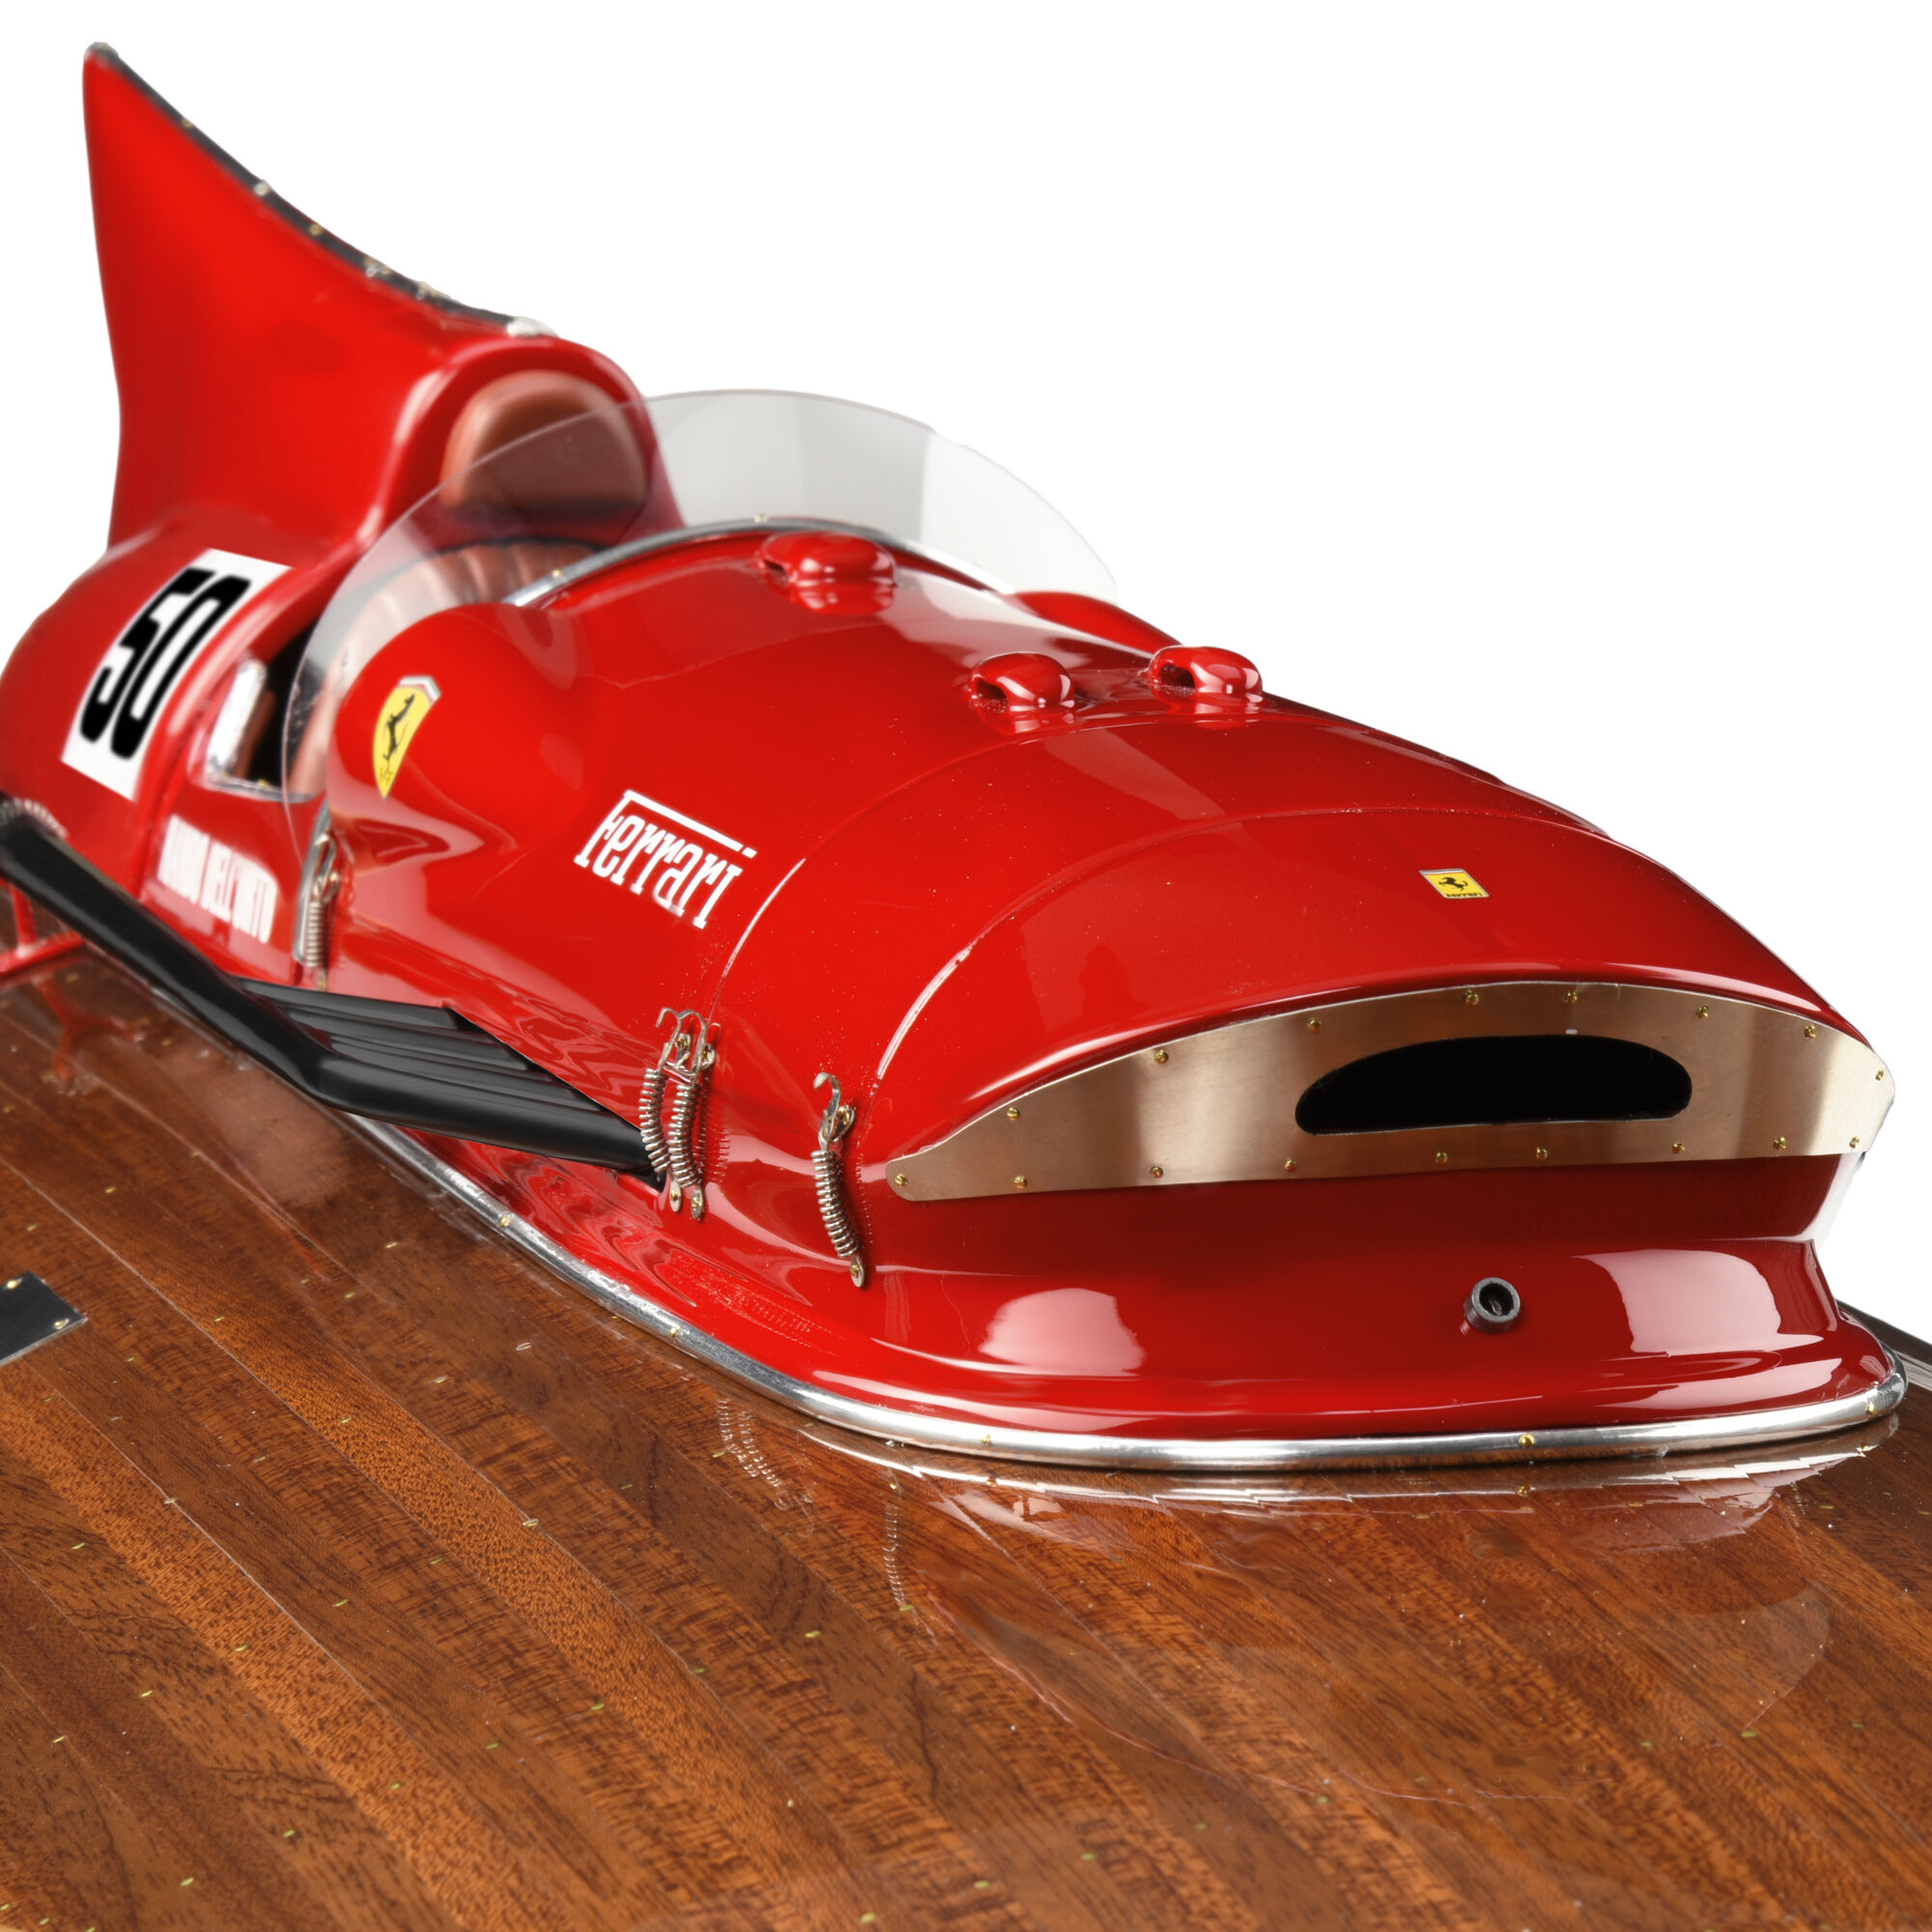 Ferrari Modello motoscafo Arno XI in scala 1:8 in edizione limitata MULTICOLORE 40610f